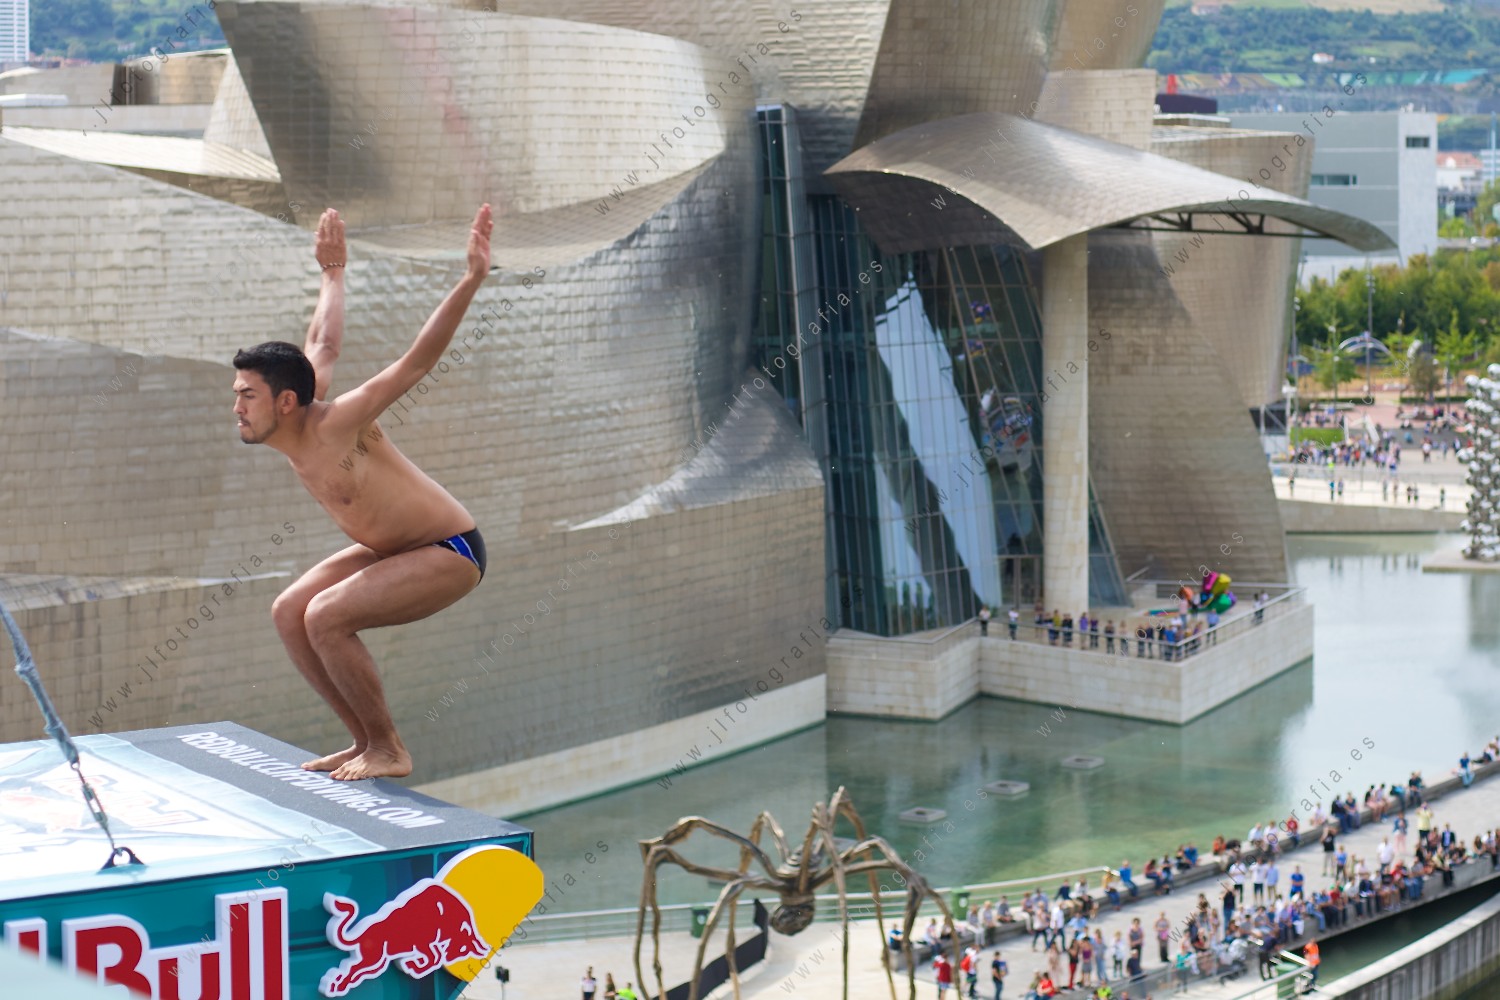 Gesto del clavadista antes del comienzo del salto en en el Red Bull Cliff Diving en Bilbao con el Guggenheim al fondo